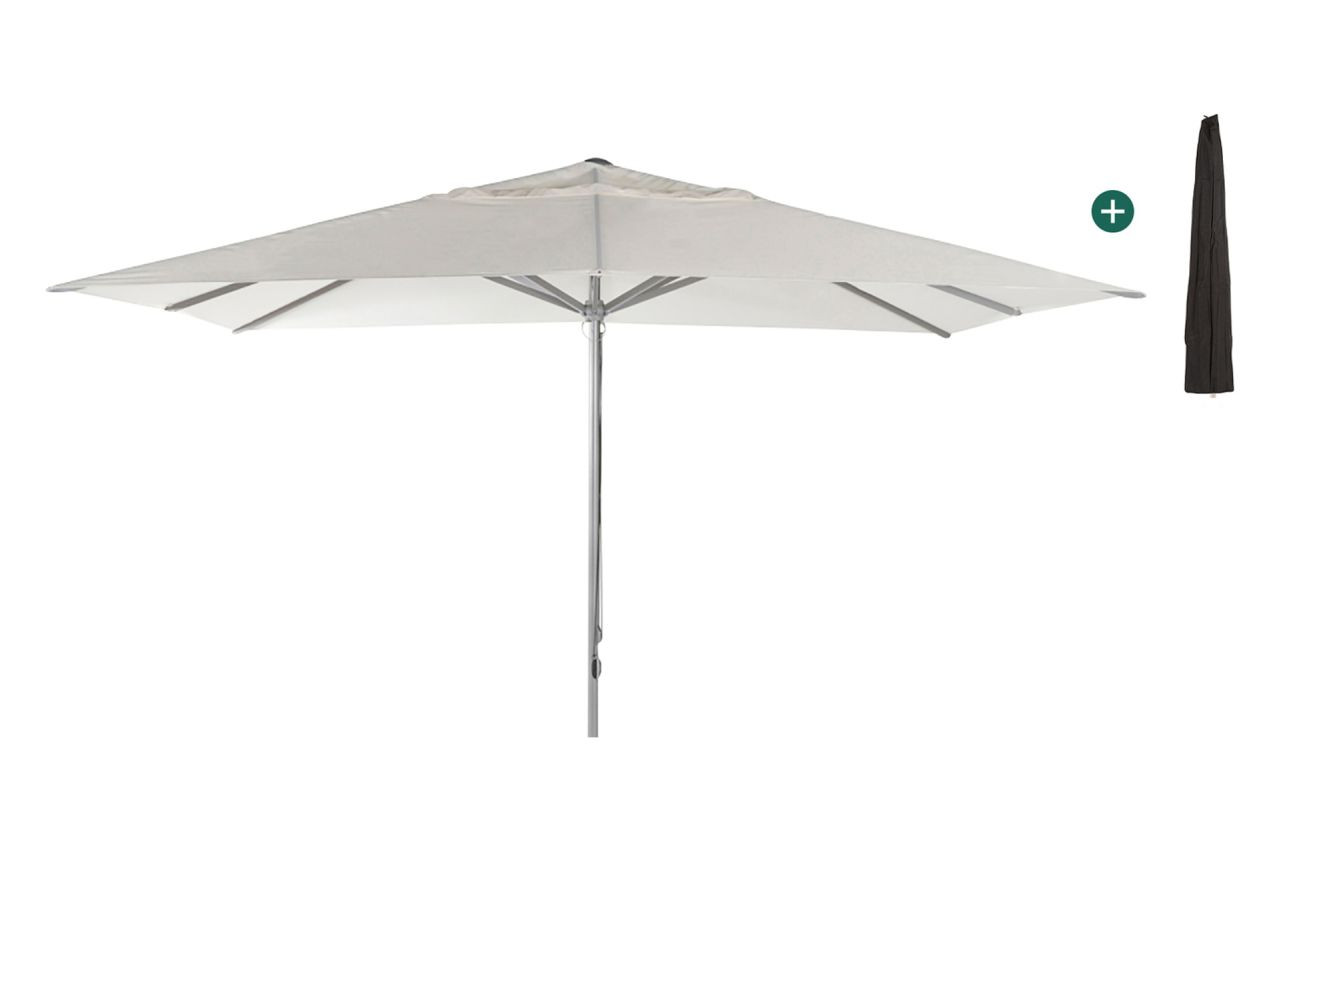 Shadowline Cuba parasol 400x300cm - Laagste prijsgarantie!